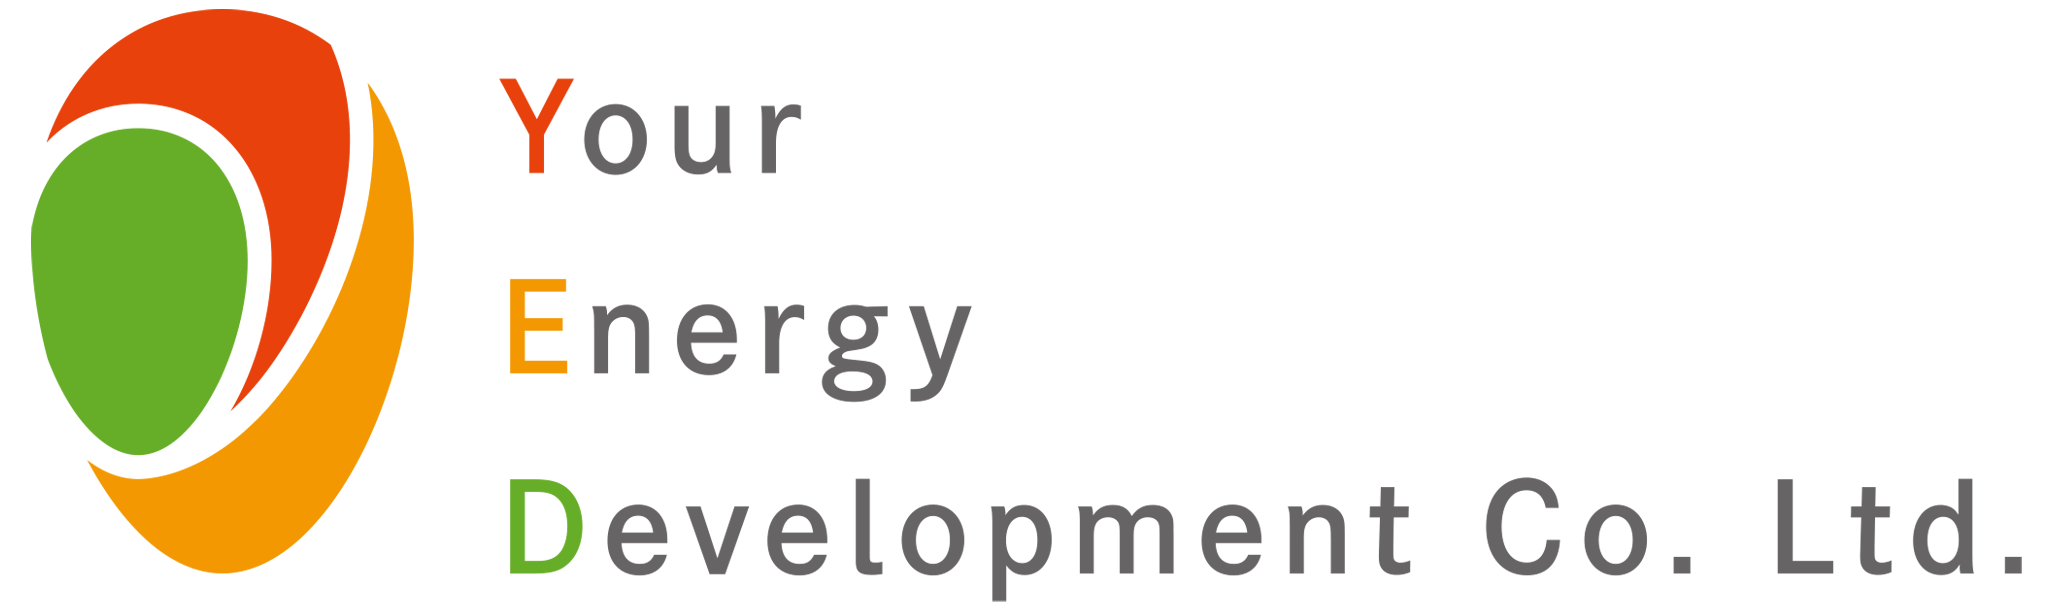 ユア・エネルギー開発株式会社